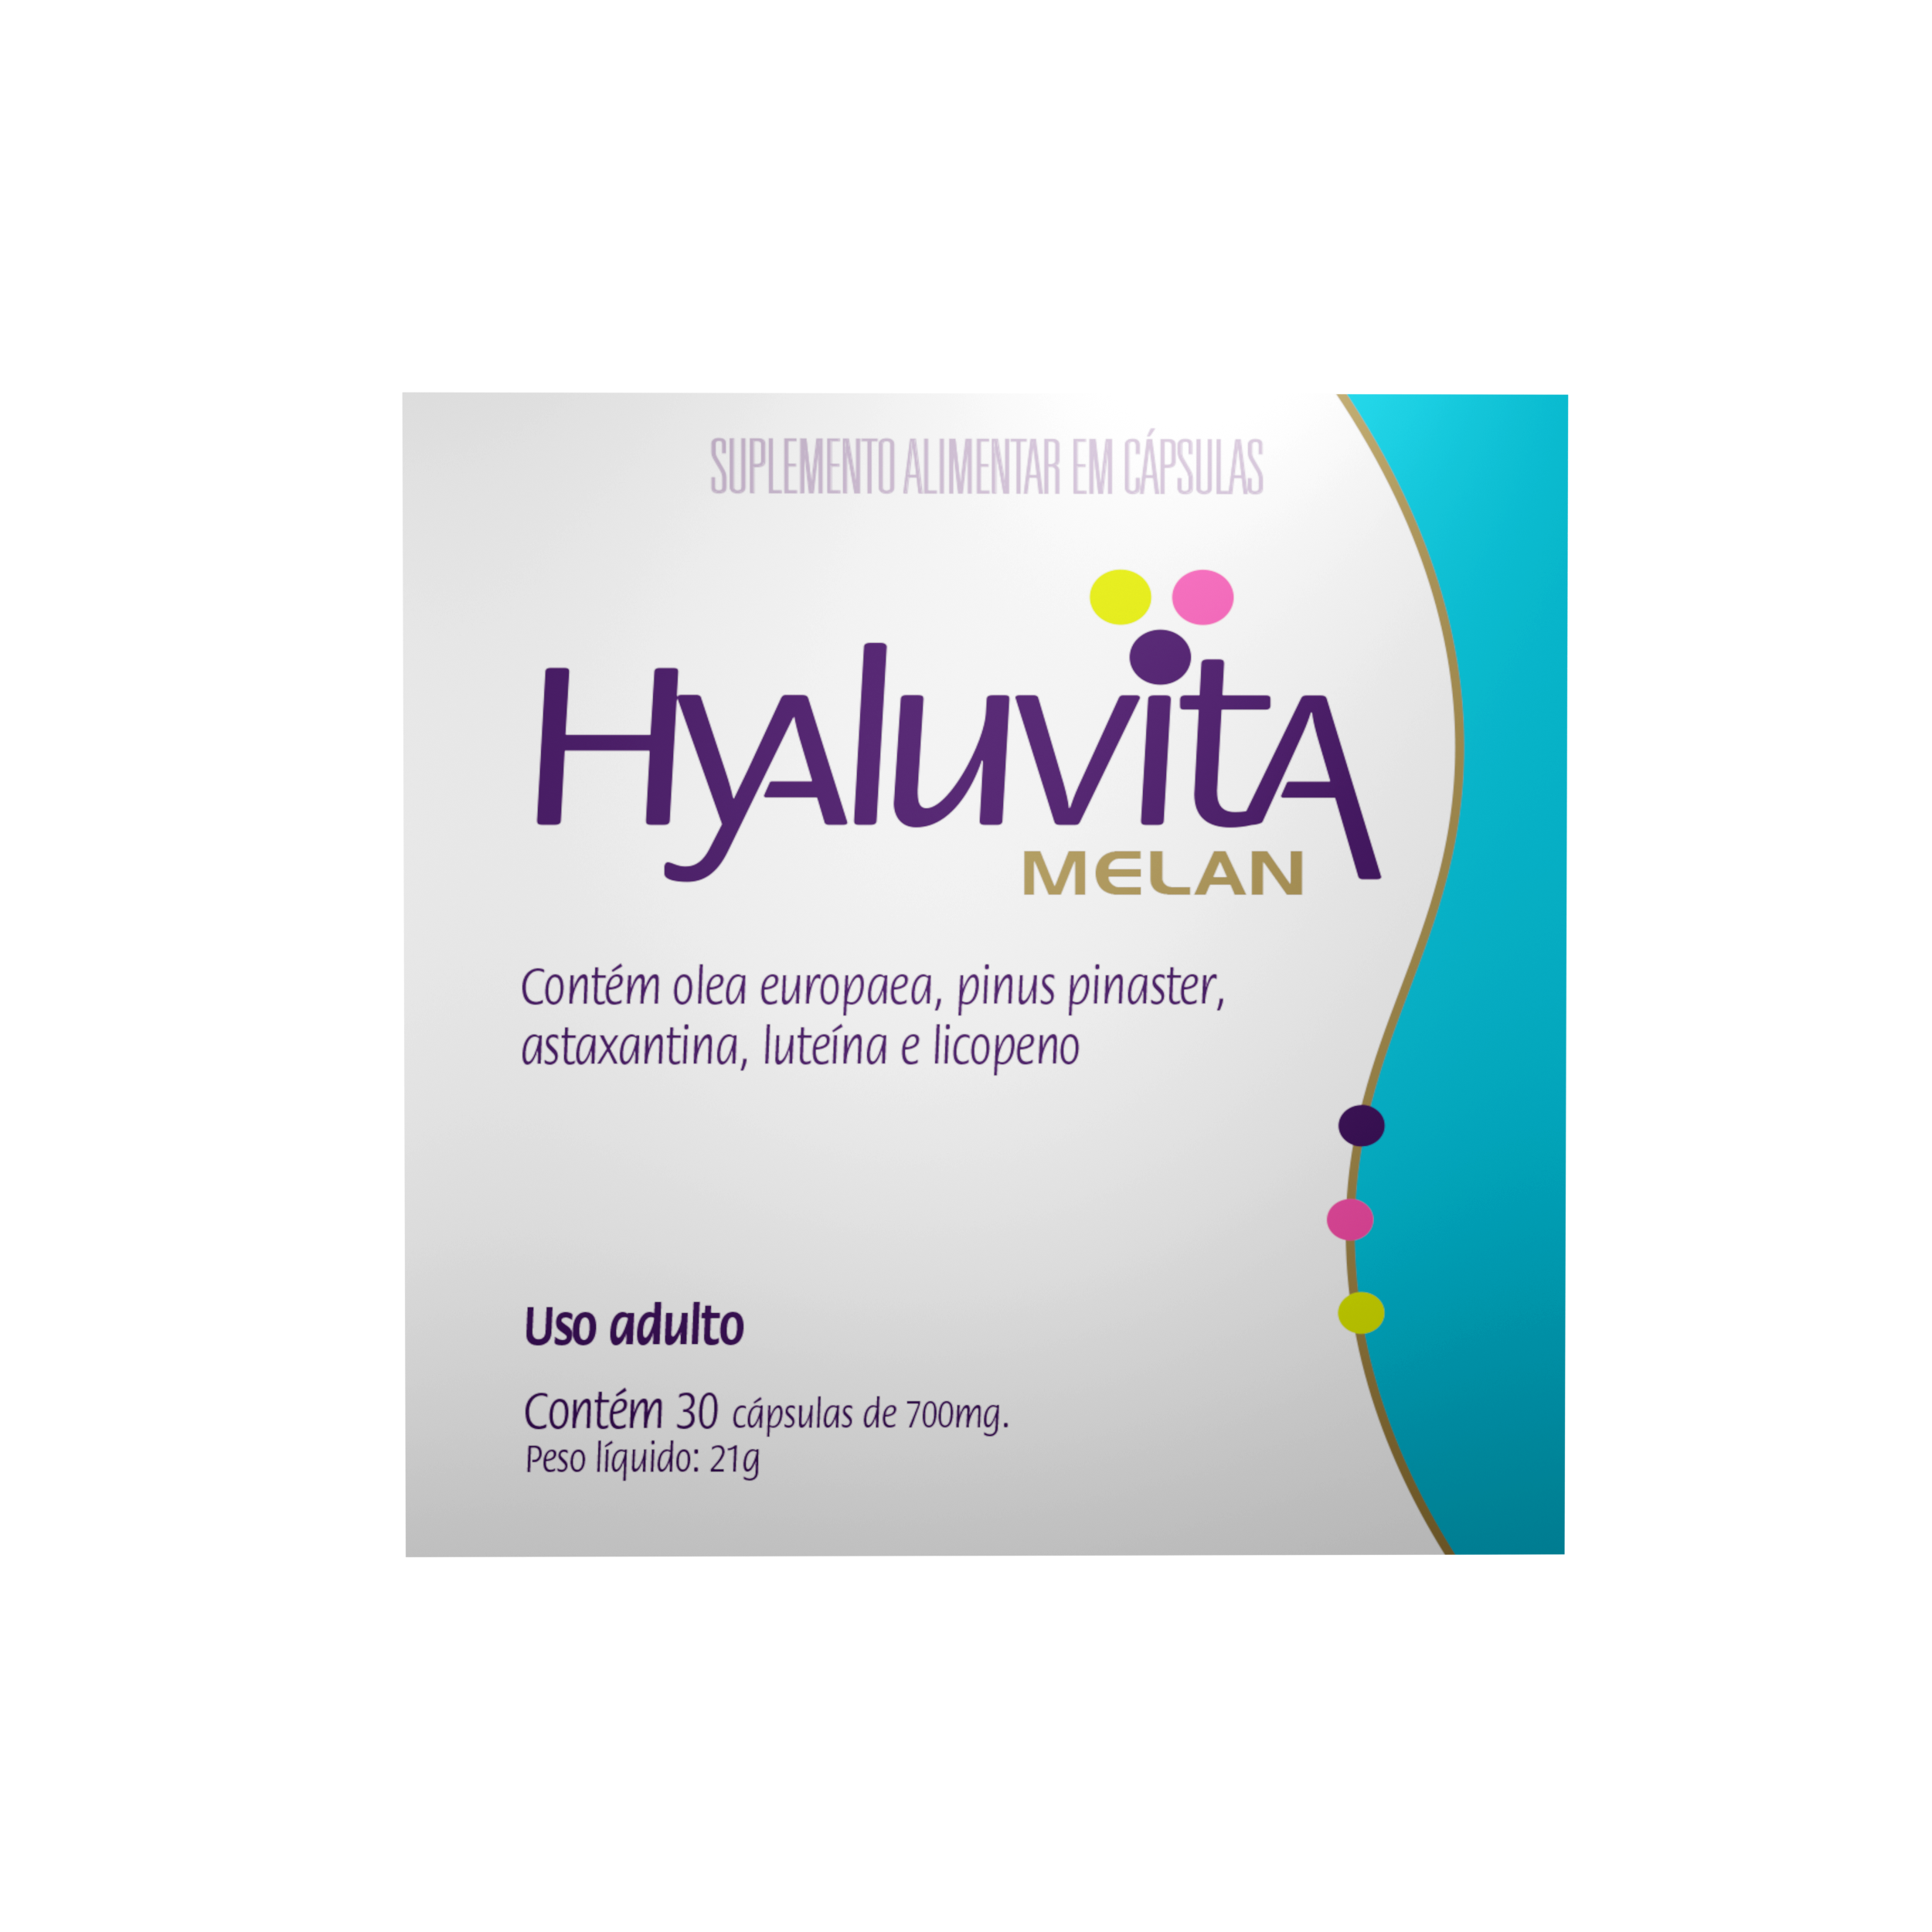 Hyaluvita Melan (1, 3 ou 6 Meses)